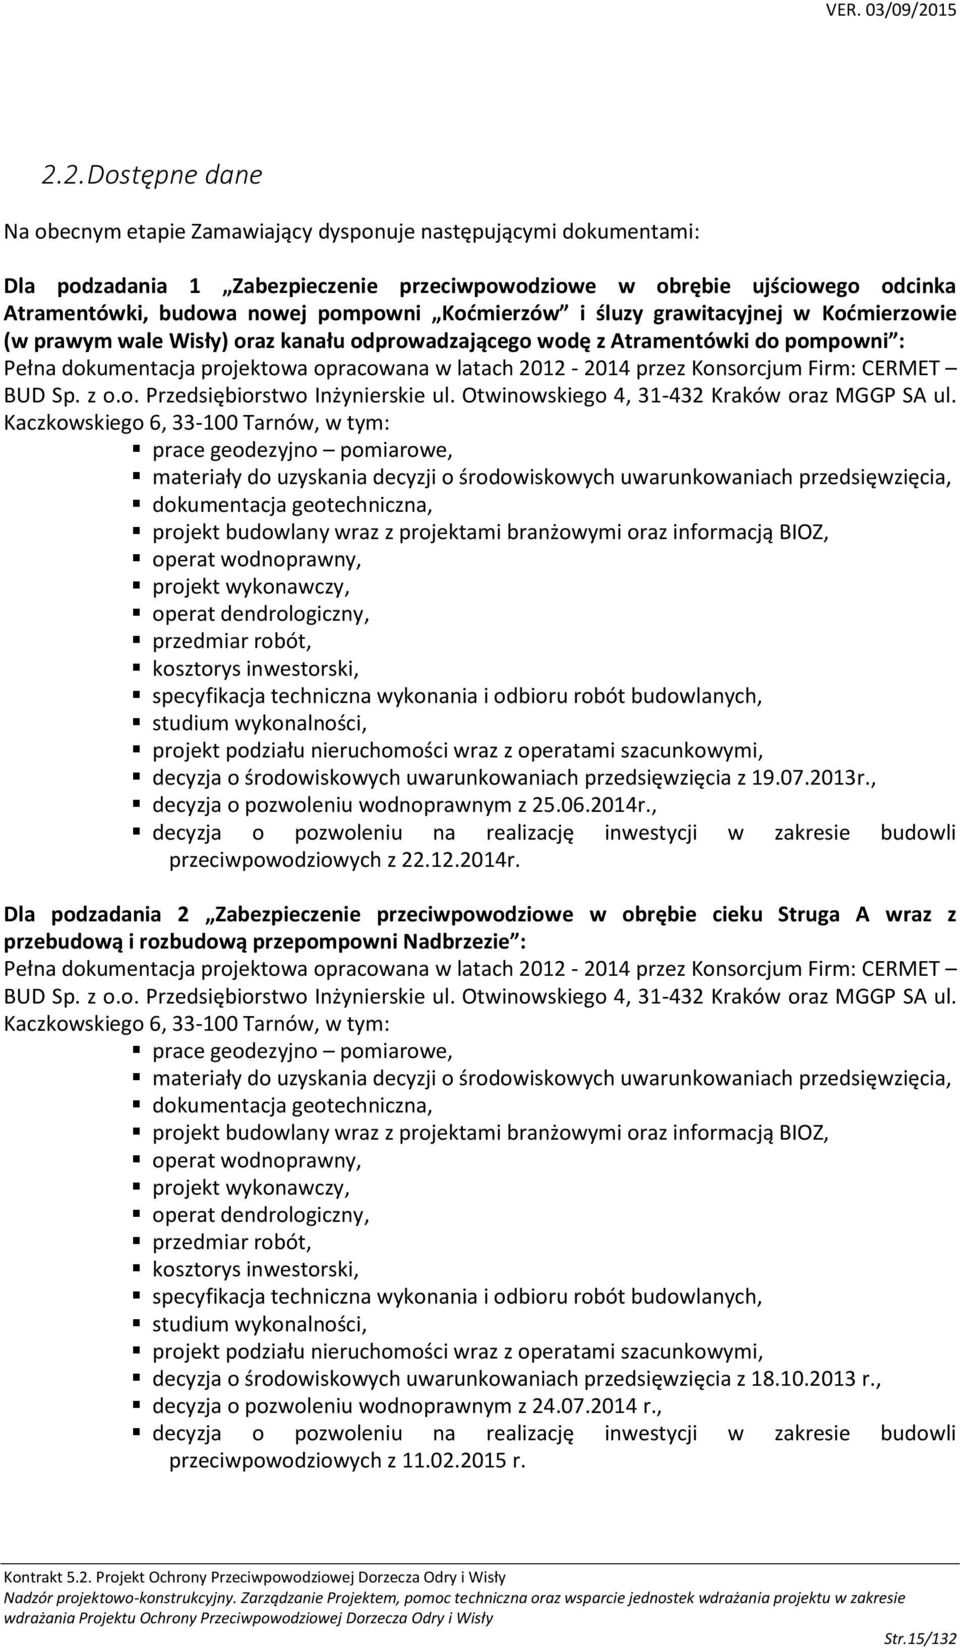 2012-2014 przez Konsorcjum Firm: CERMET BUD Sp. z o.o. Przedsiębiorstwo Inżynierskie ul. Otwinowskiego 4, 31-432 Kraków oraz MGGP SA ul.